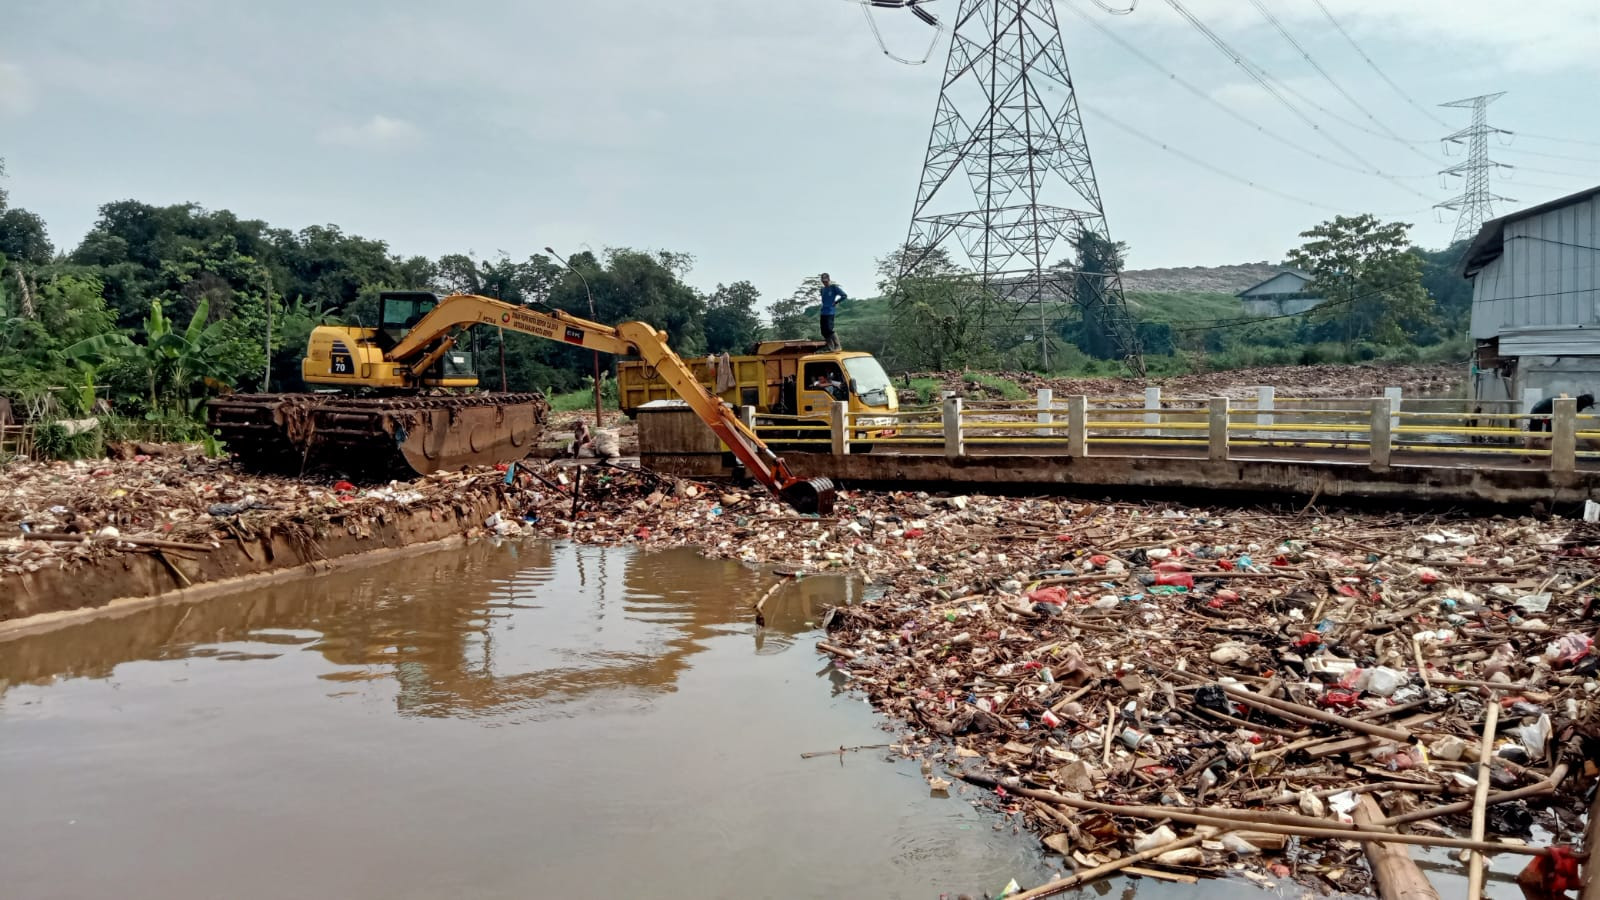 Demi Mencegah Banjir, Pemkab Bekasi Normalisasi 3 Sungai Sepanjang 13 Kilometer - JPNN.com Jabar